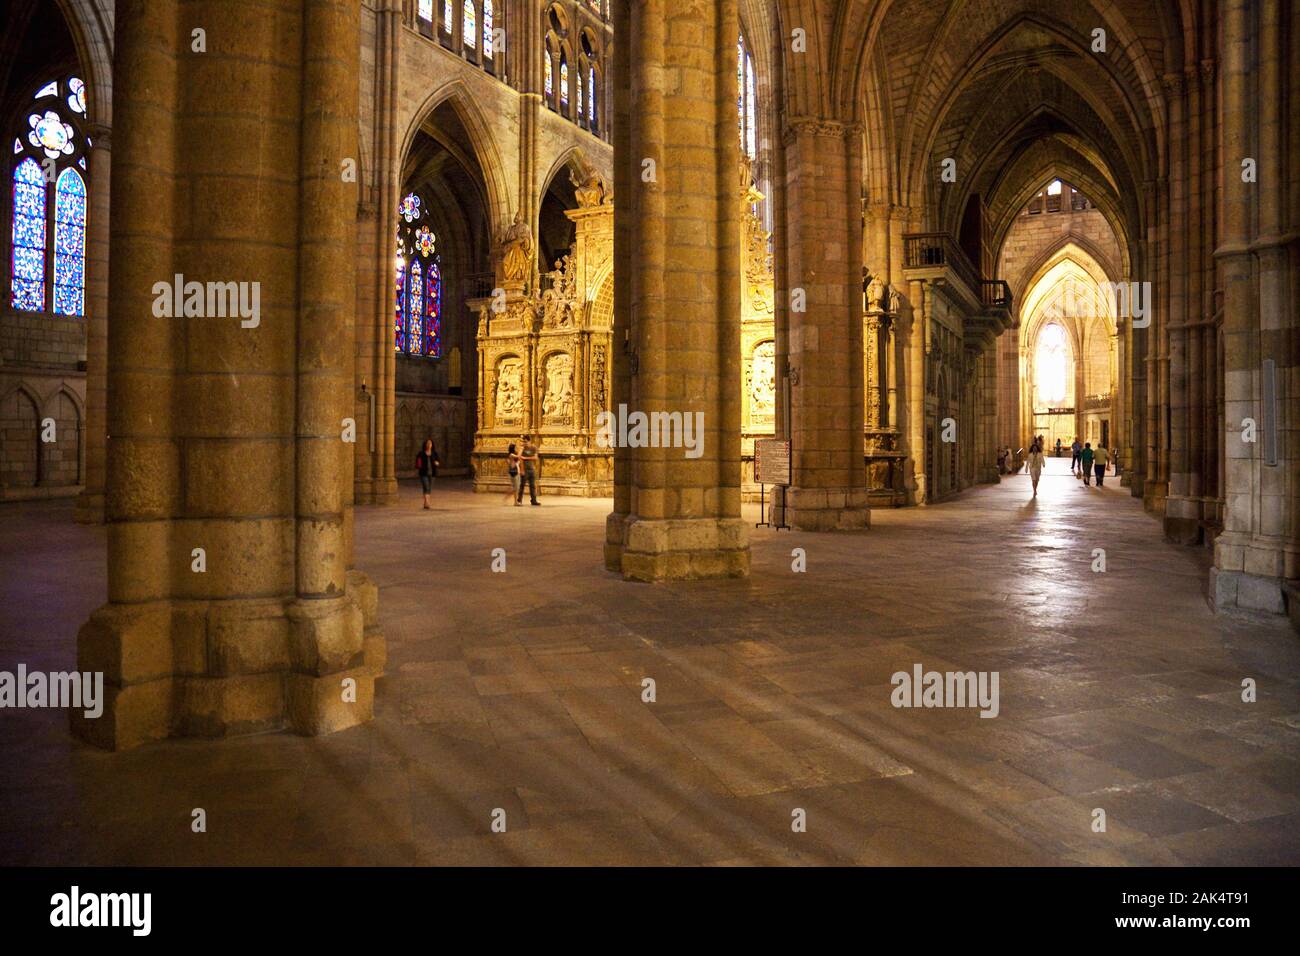 León: Innenansicht der Kathedrale, Spanien Norden | usage worldwide Stock Photo